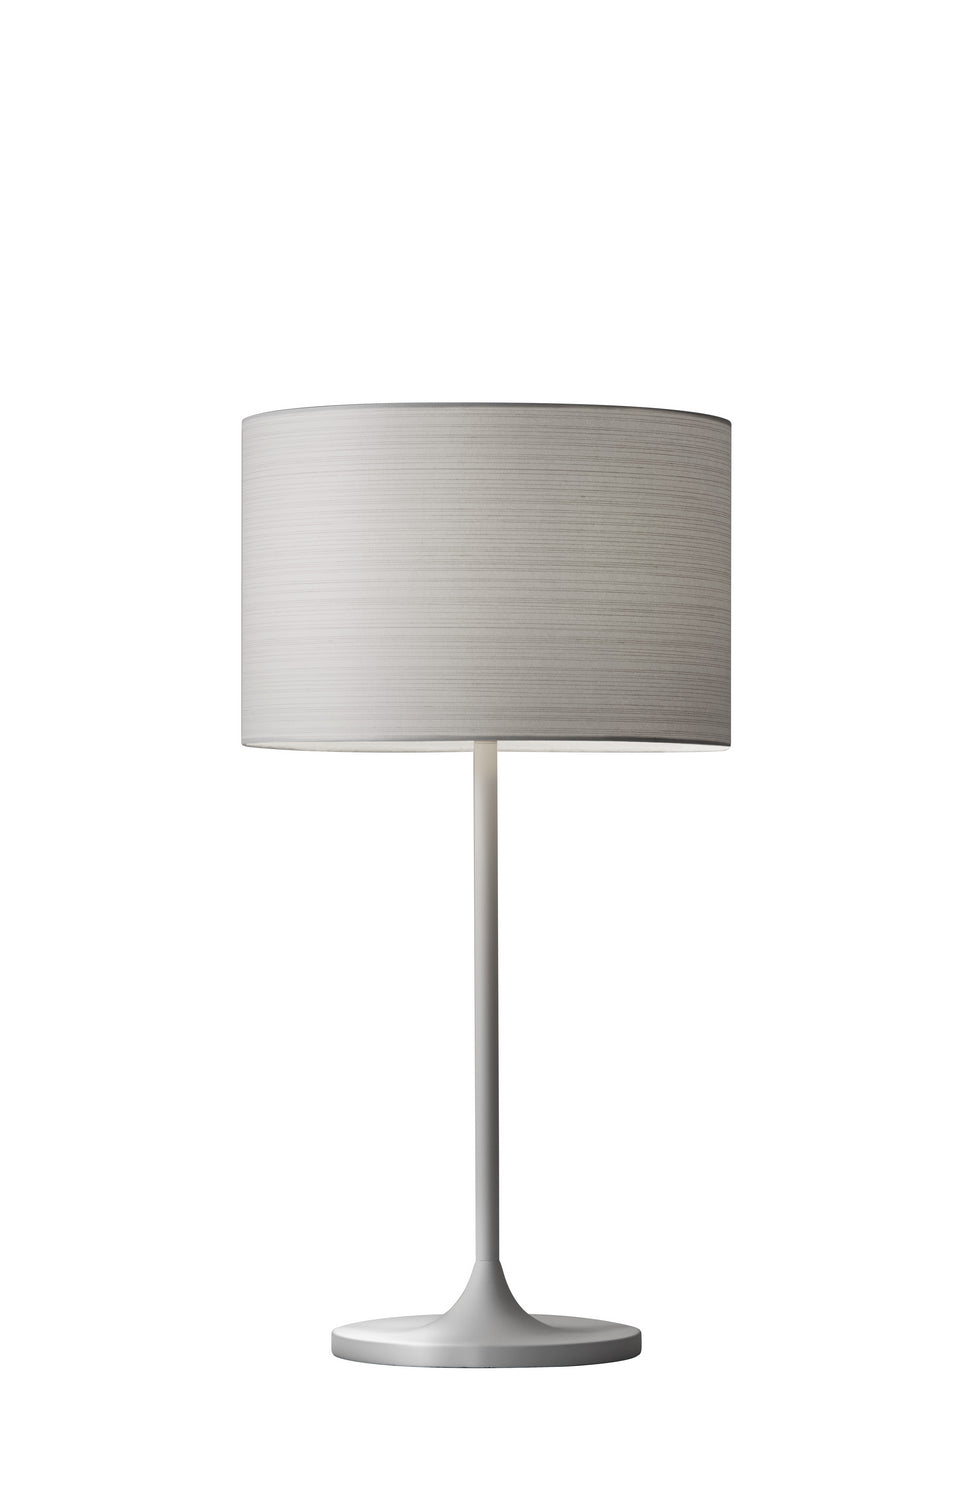 Adesso Home 6236-02  Oslo Lamp White Metal